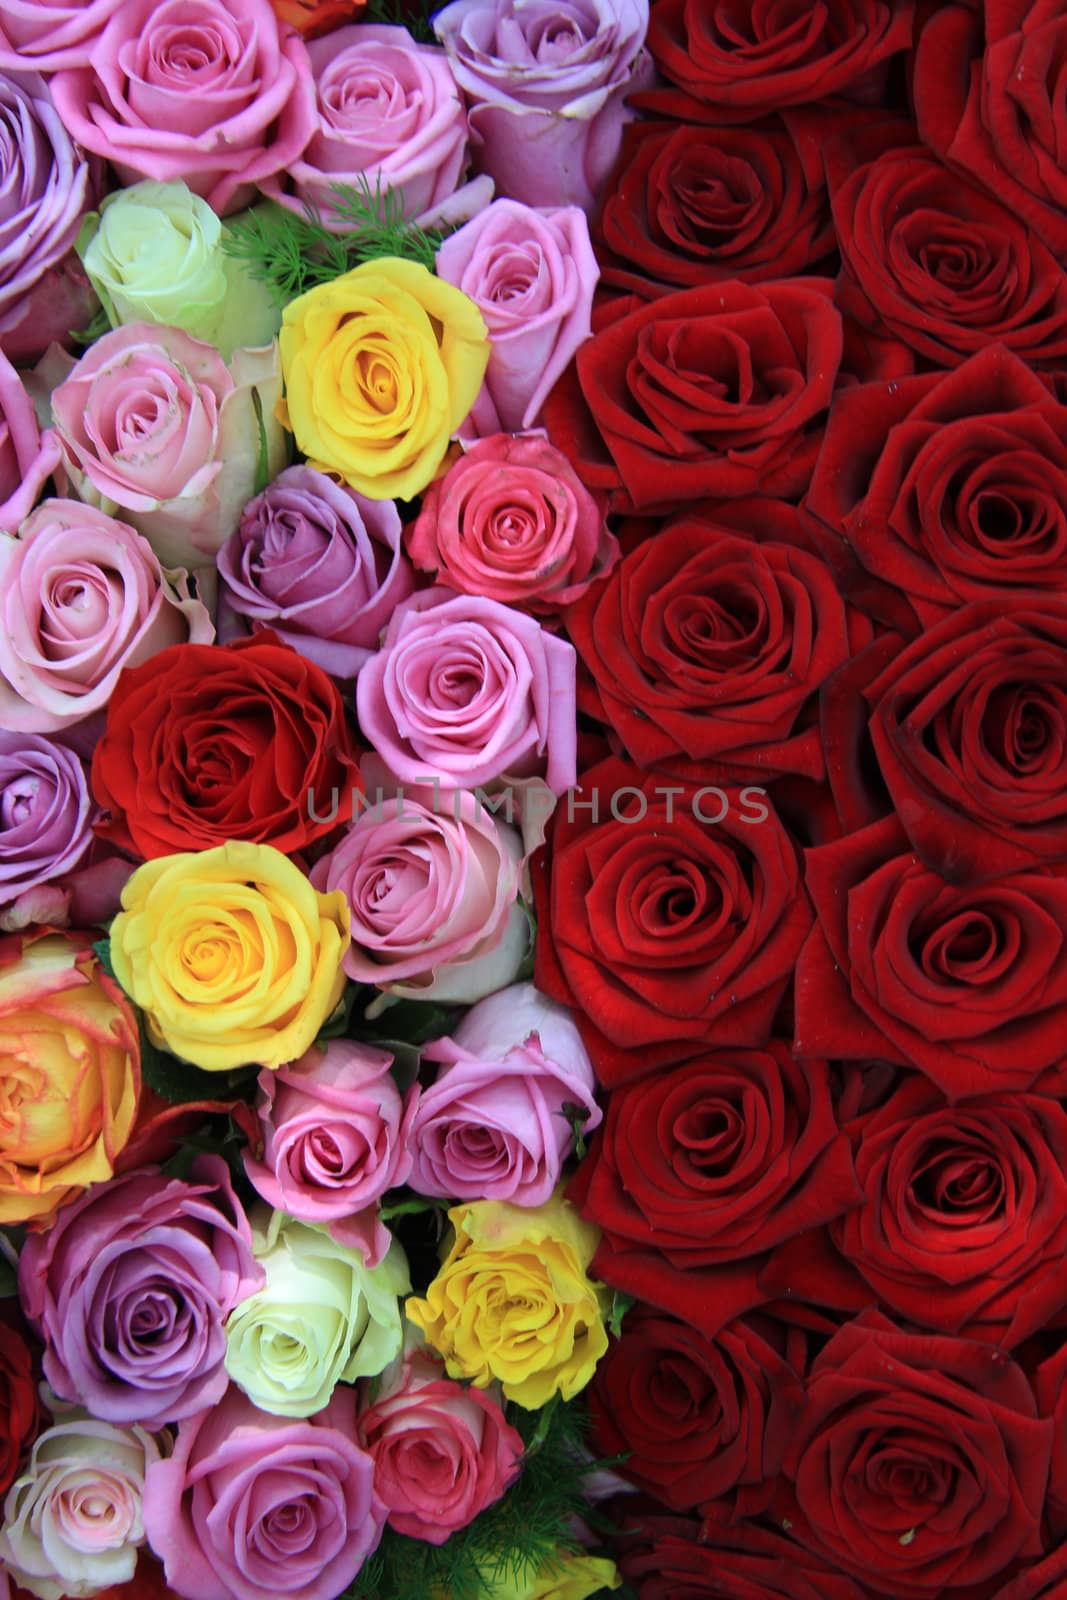 Mixed roses by studioportosabbia